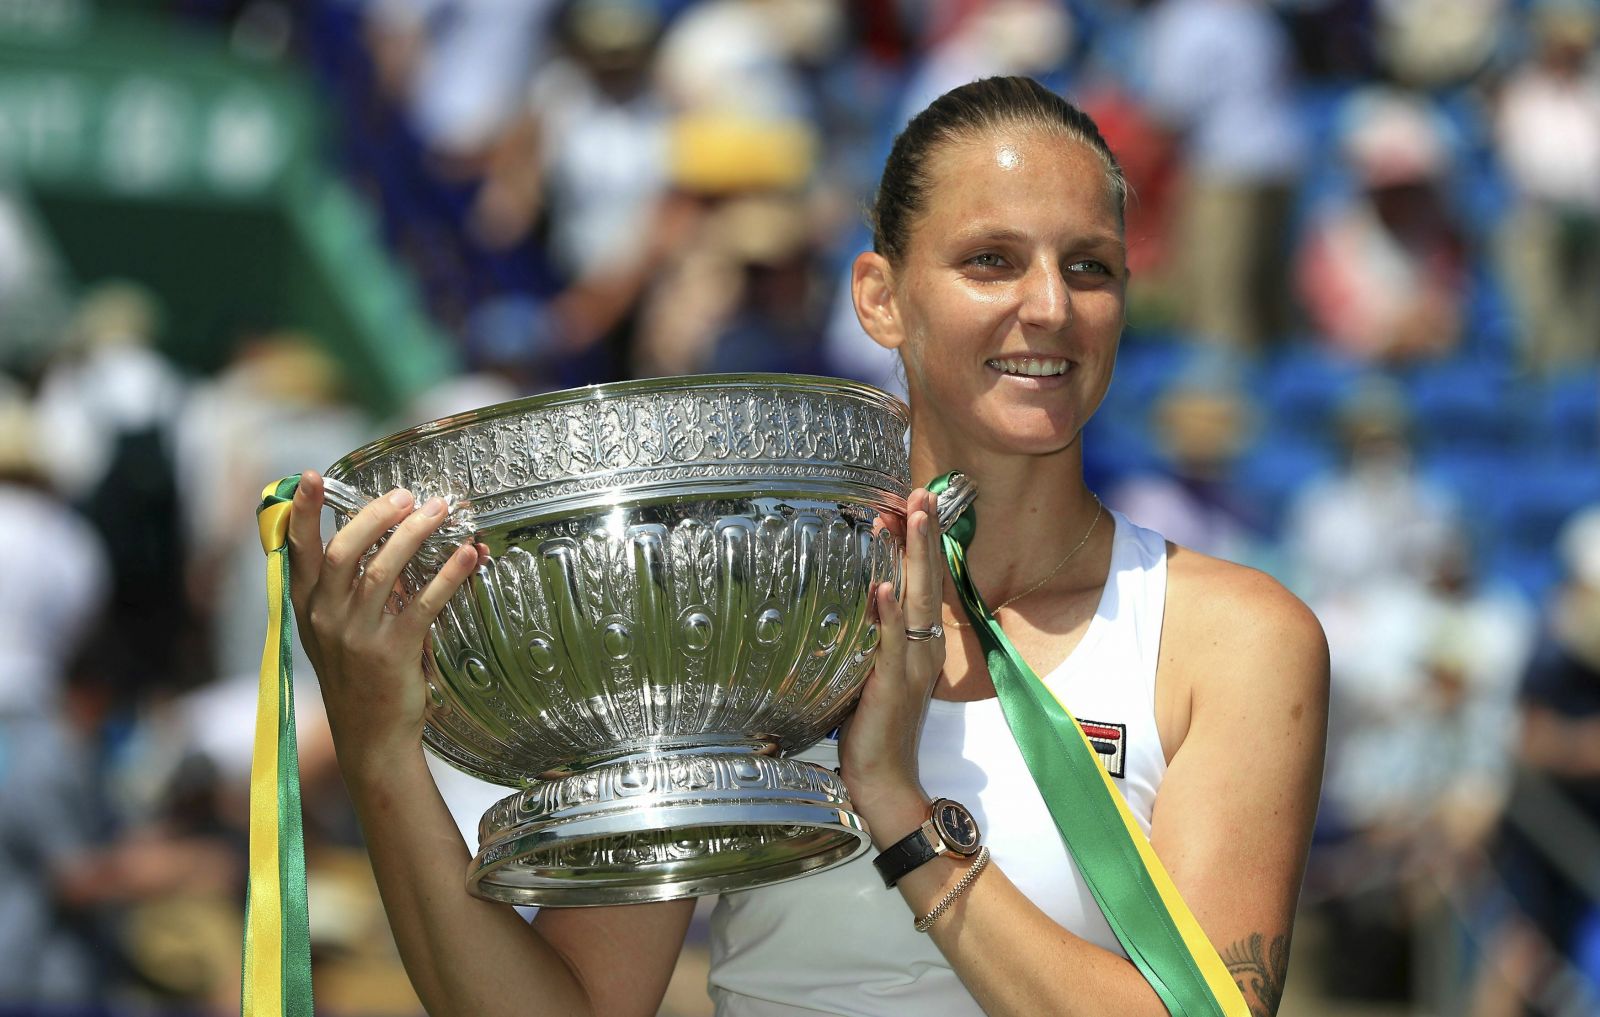 Česká tenistka Karolína Plíšková patří mezi 10 nejlépe placených sportovkyň na světě